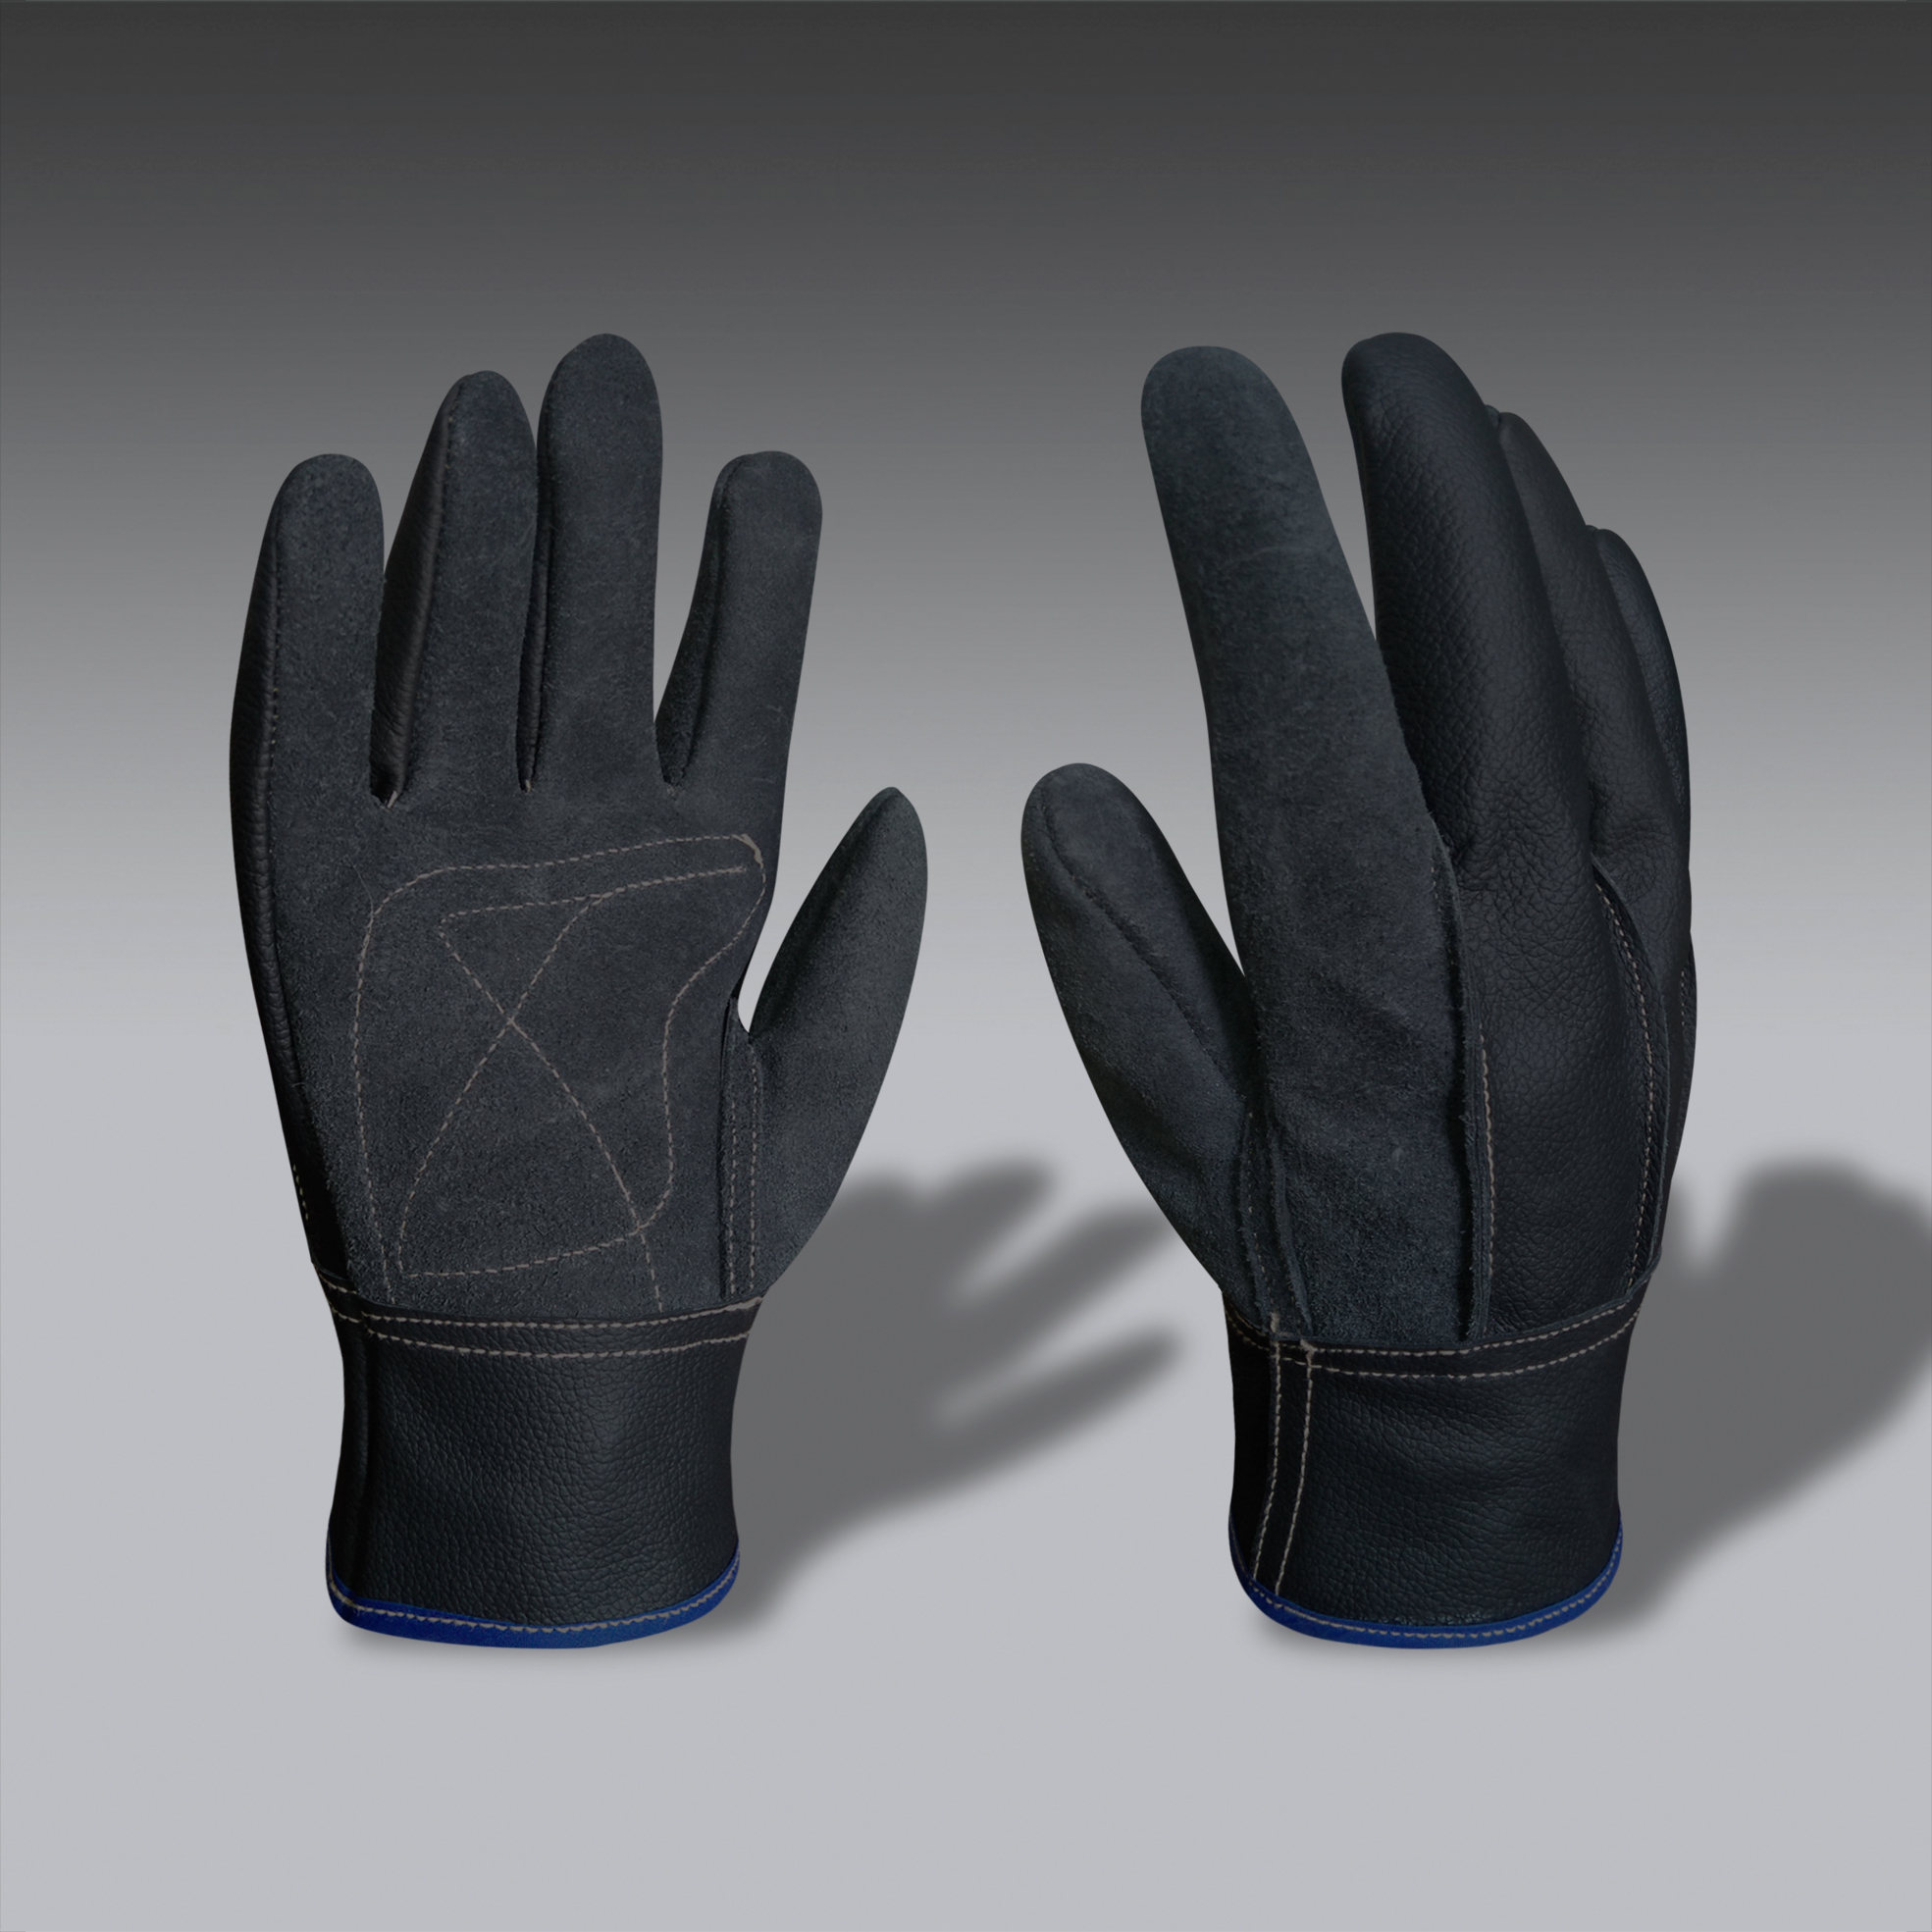 guantes para la seguridad industrial modelo CarEco 01 guantes de seguridad industrial modelo CarEco 01